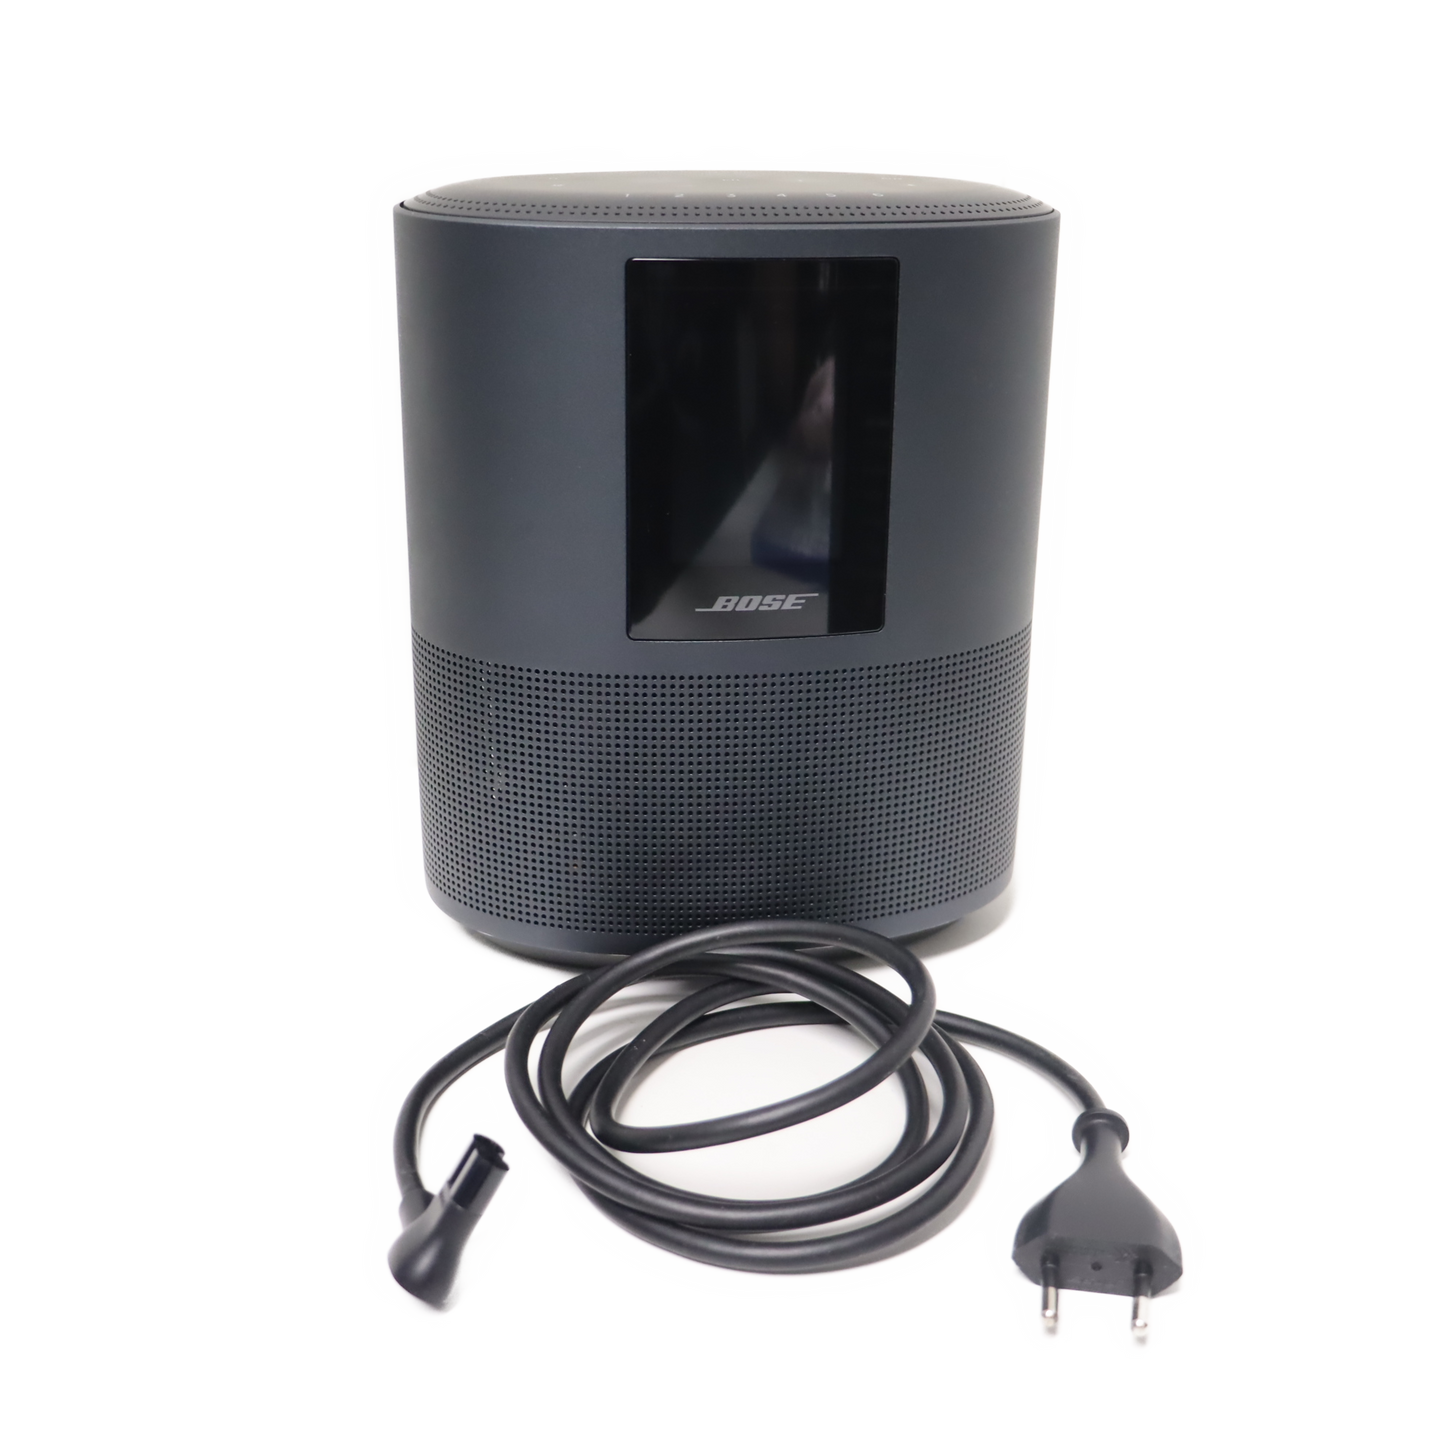 Bose Home Speaker 500 mit integrieret Amazon Alexa-Sprachsteuerung Schwarz